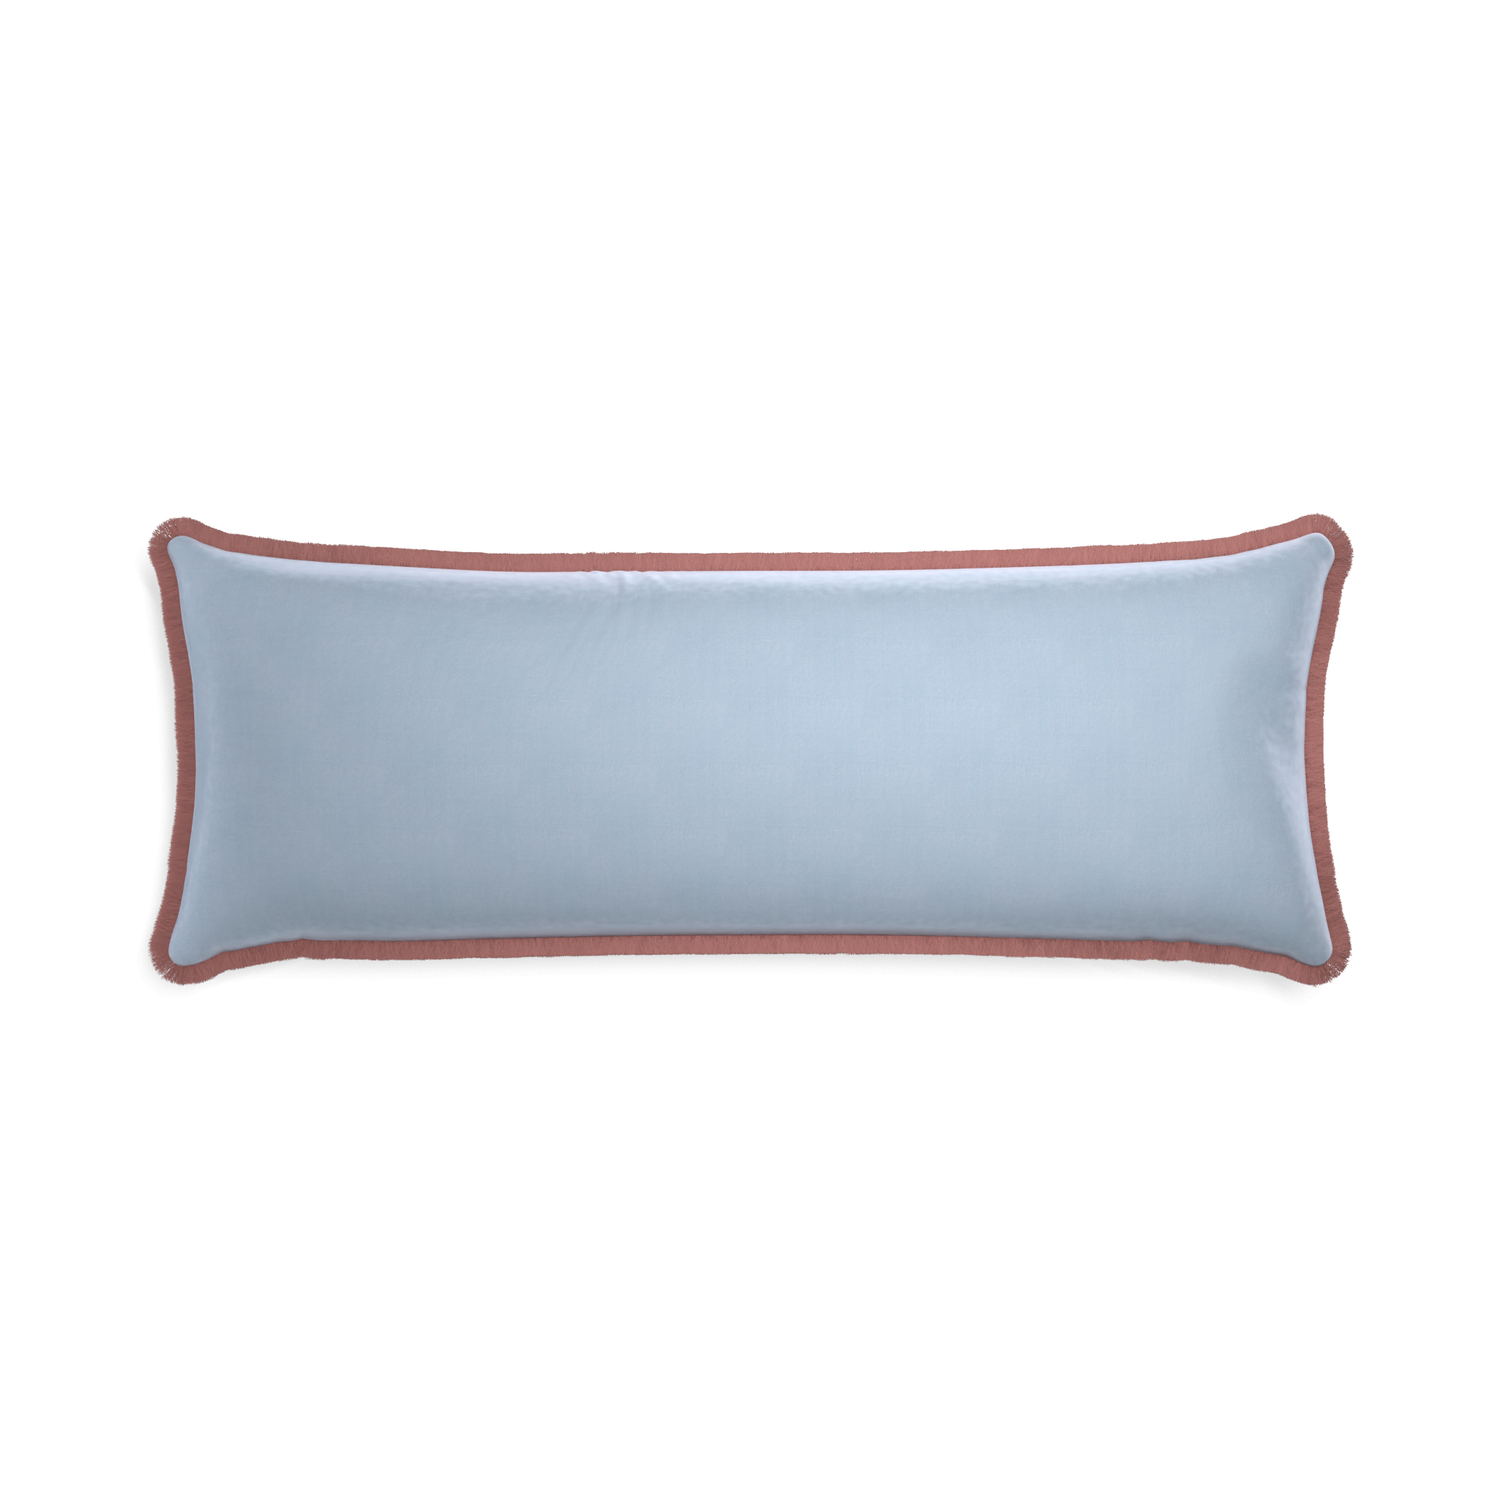 rectangle light blue velvet pillow with dusty rose fringe